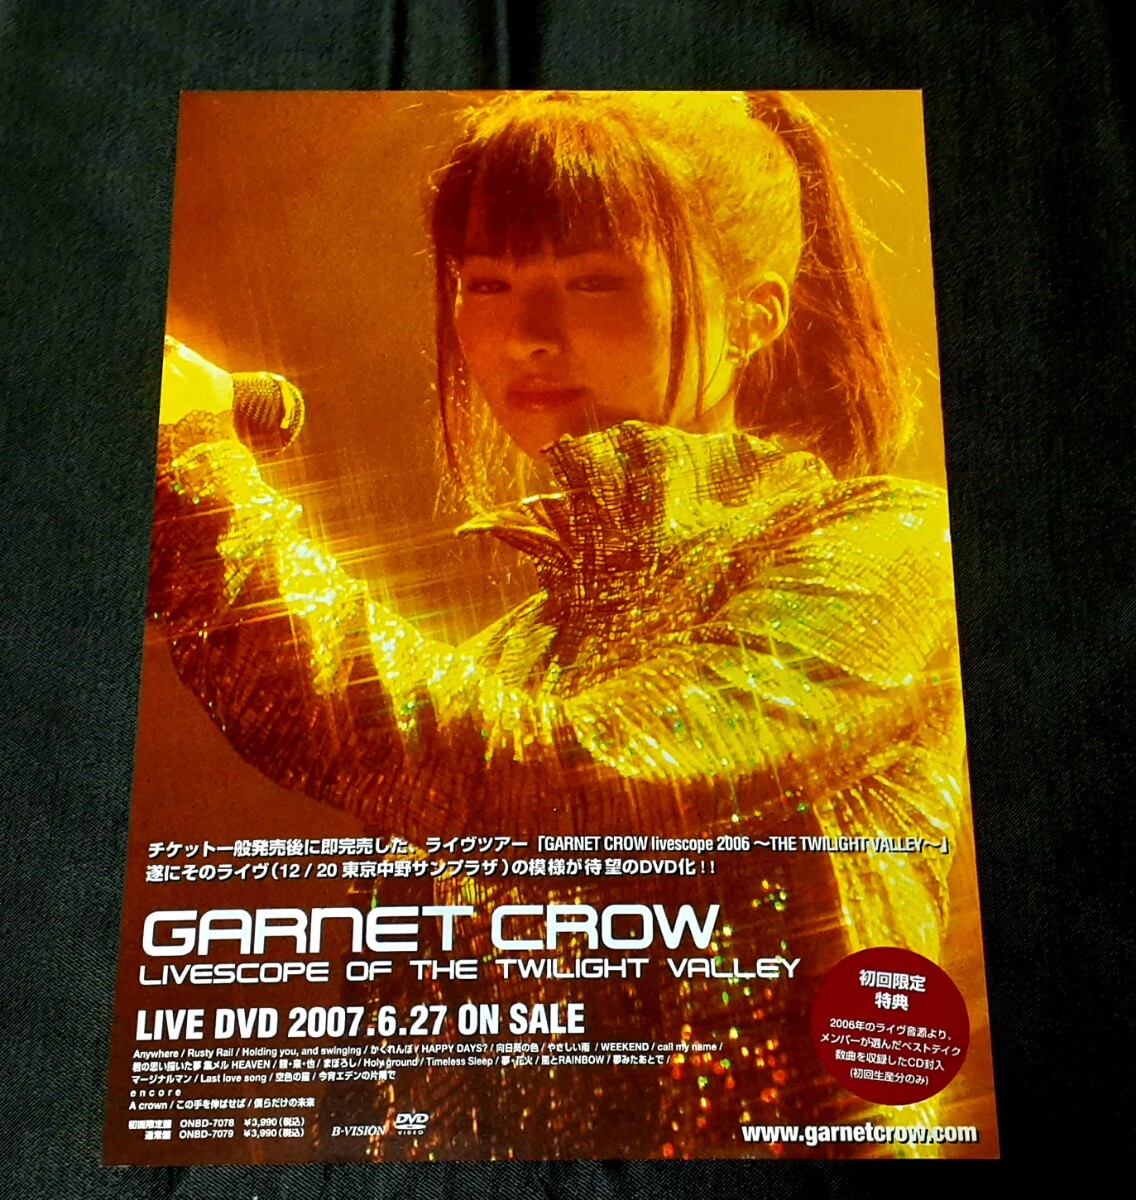 254☆) GARNET CROW 配布終了チラシ 2007年 記事 切り抜き レア貴重資料保管当時物入手困難ガーネット・クロウ フライヤー CDLIVEDVD CZ11の画像2